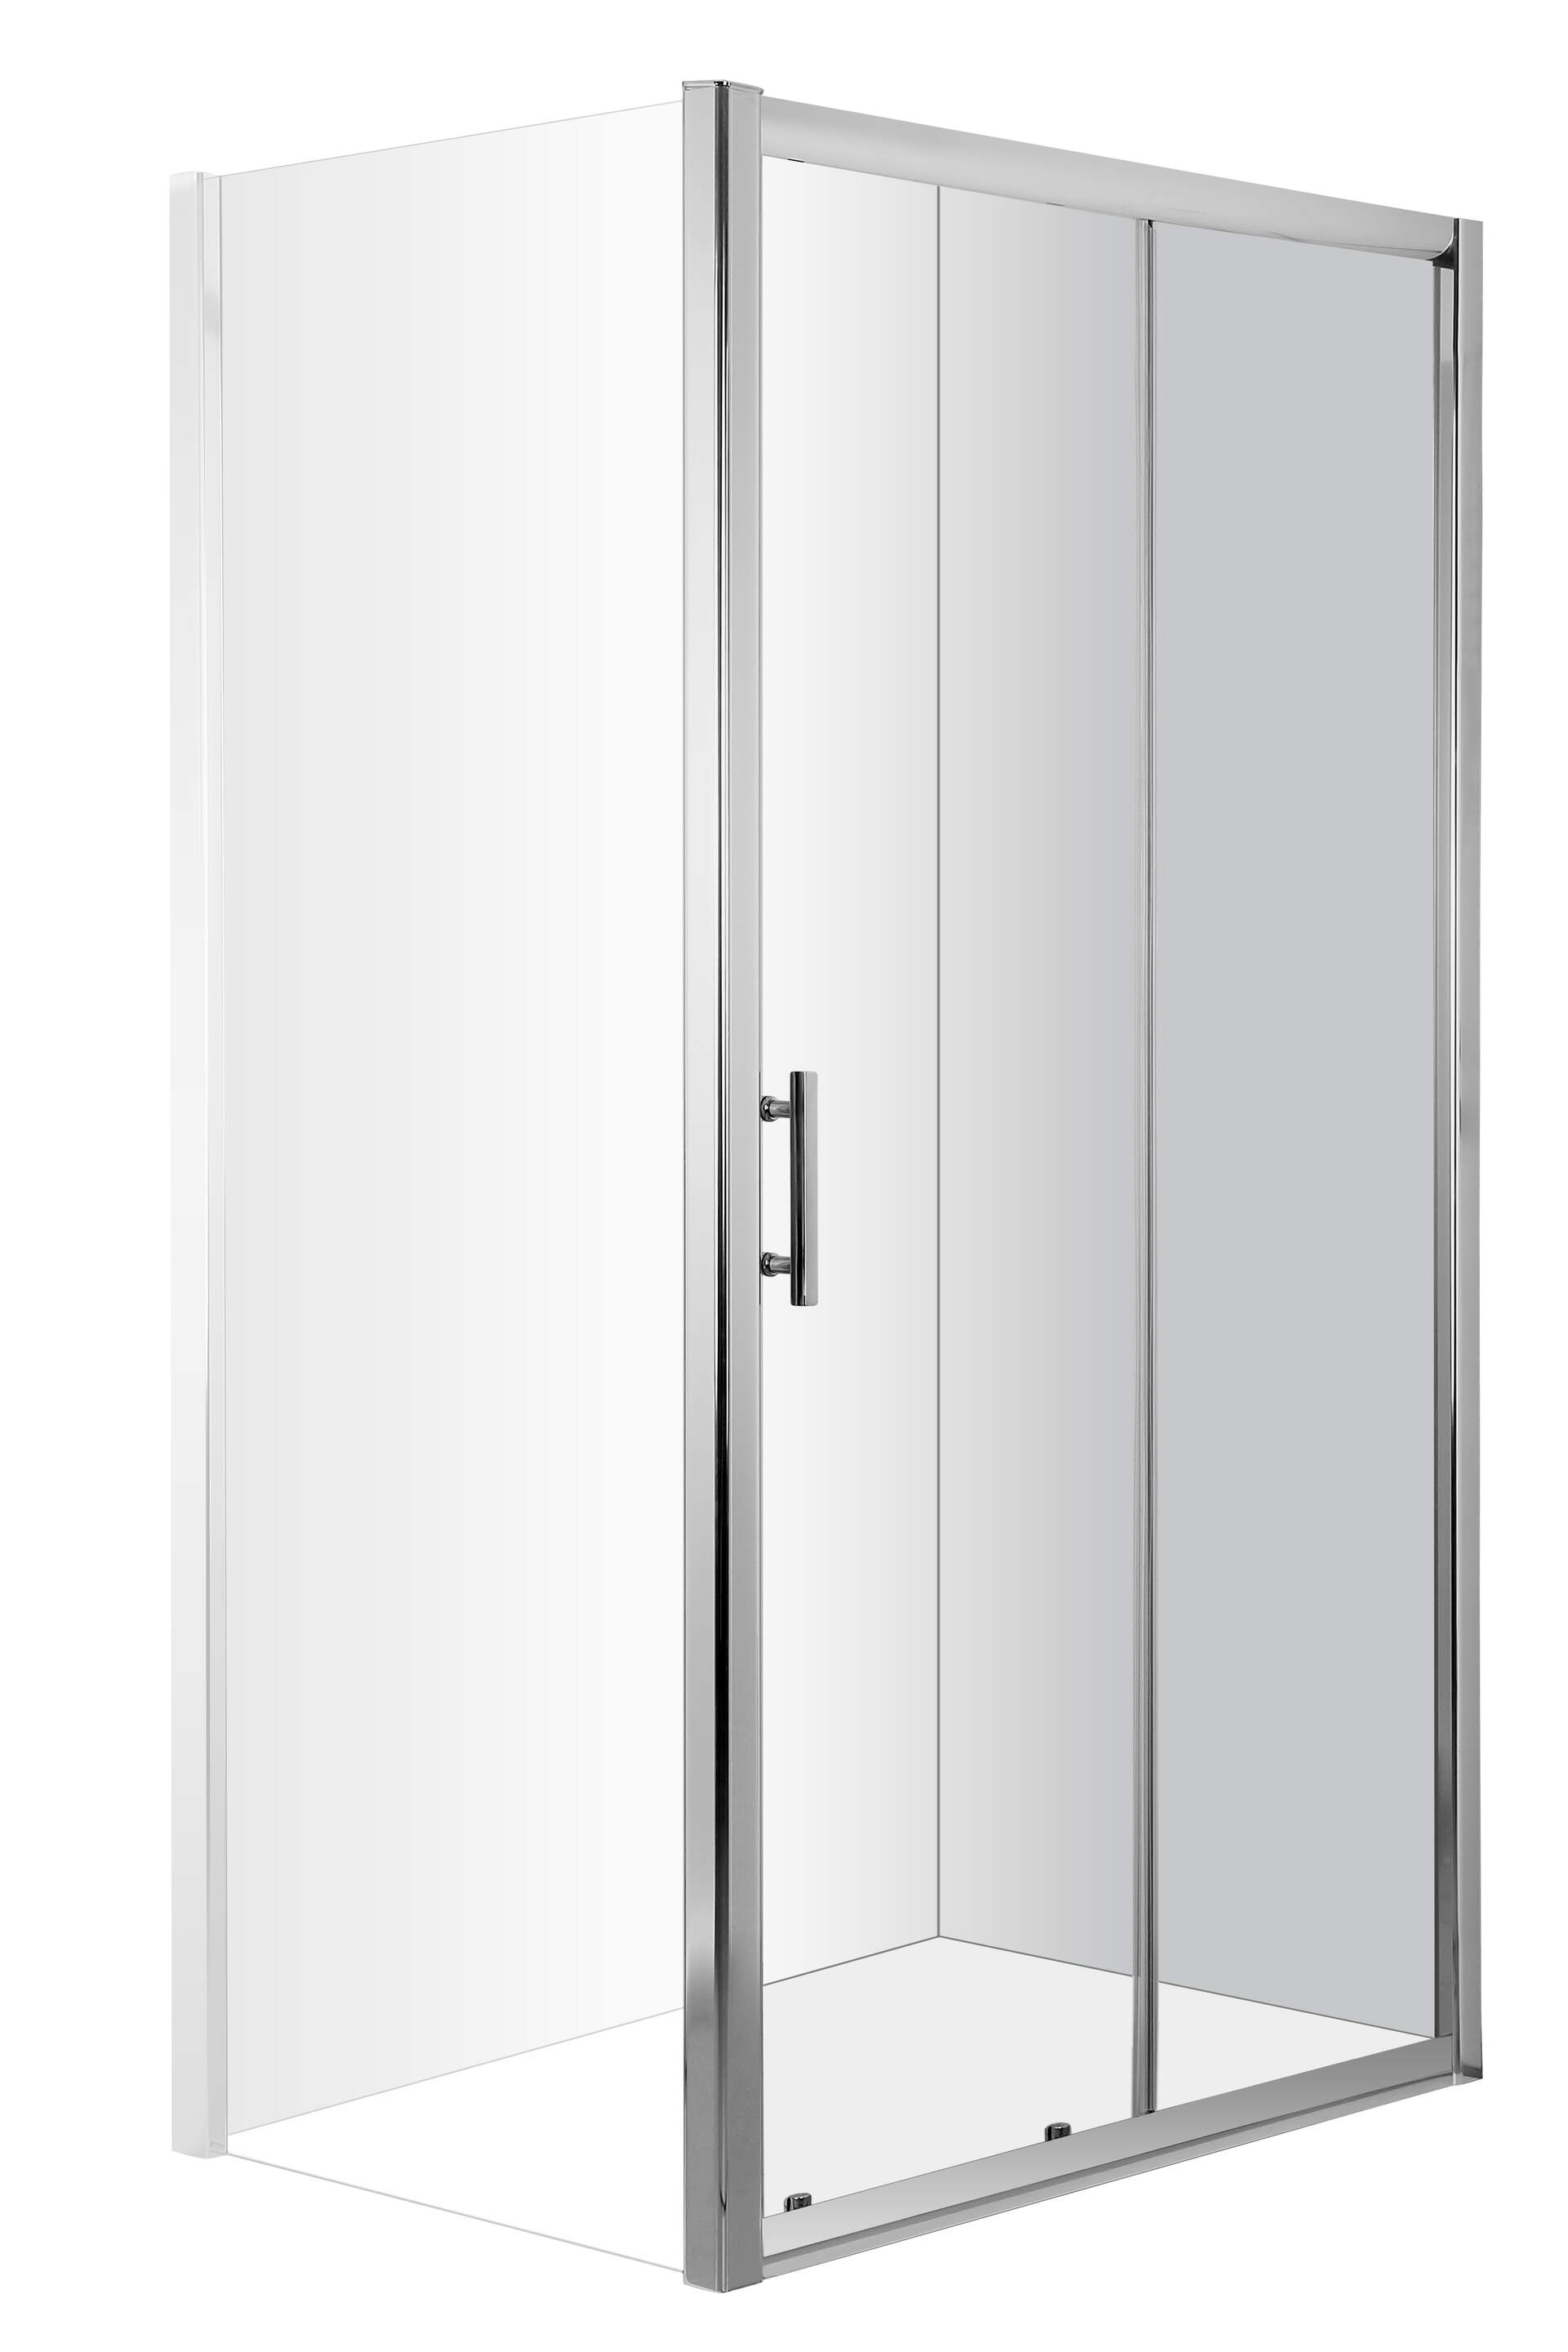 Deante Cynia sprchové dvere 120 cm posuvné KTC_012P